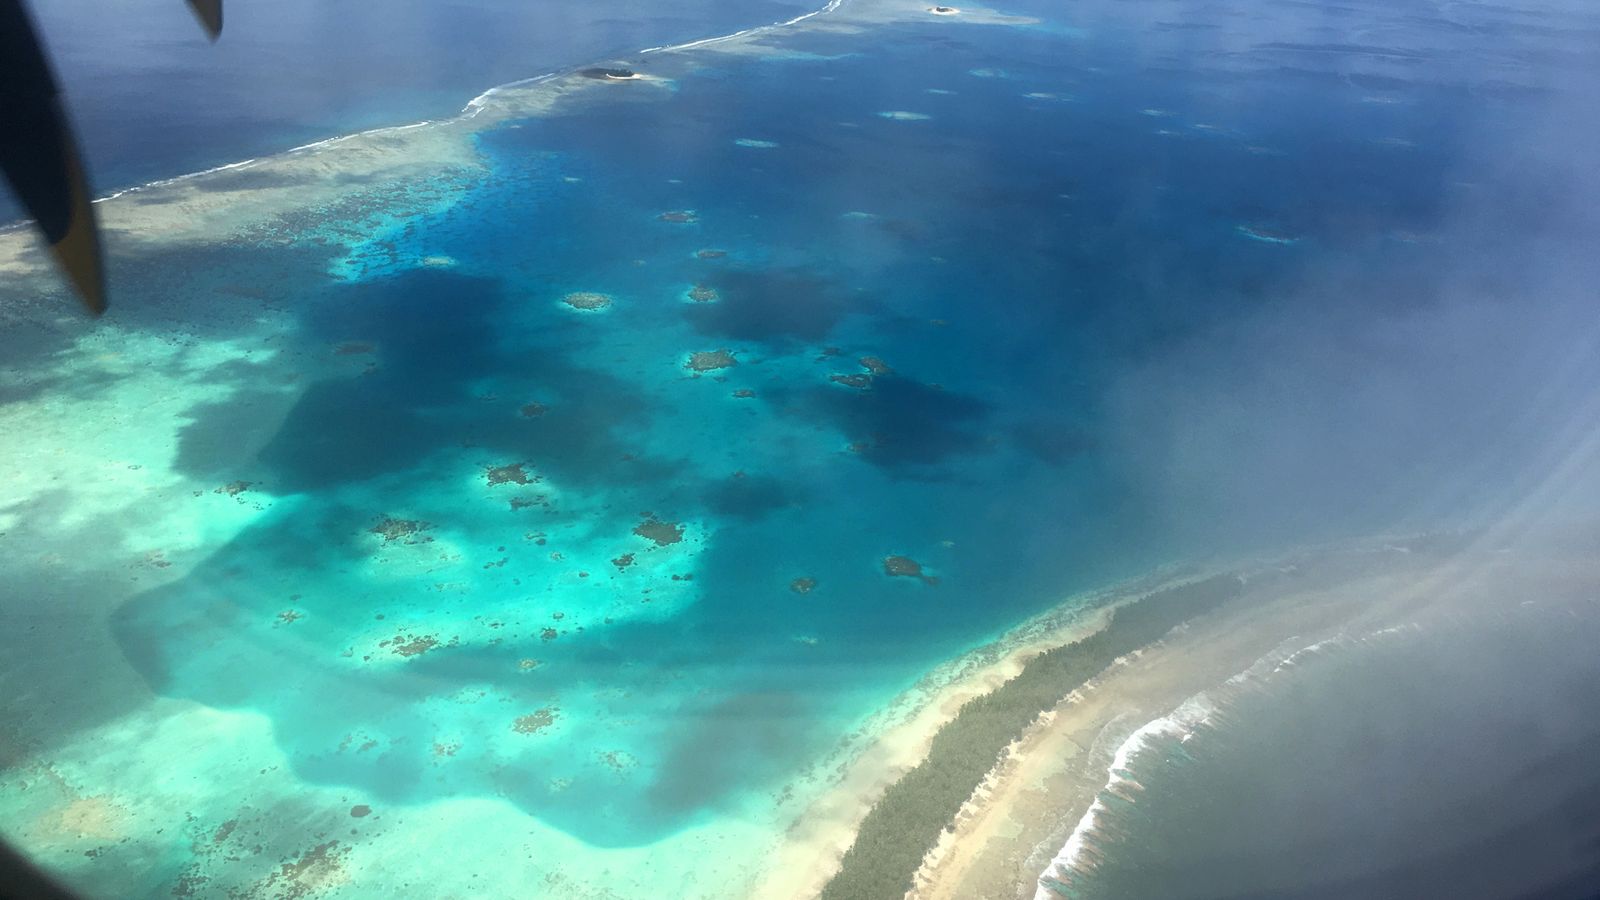 L’Australie conclut un pacte climatique « révolutionnaire » pour offrir un refuge aux résidents déplacés de Tuvalu |  Actualités climatiques